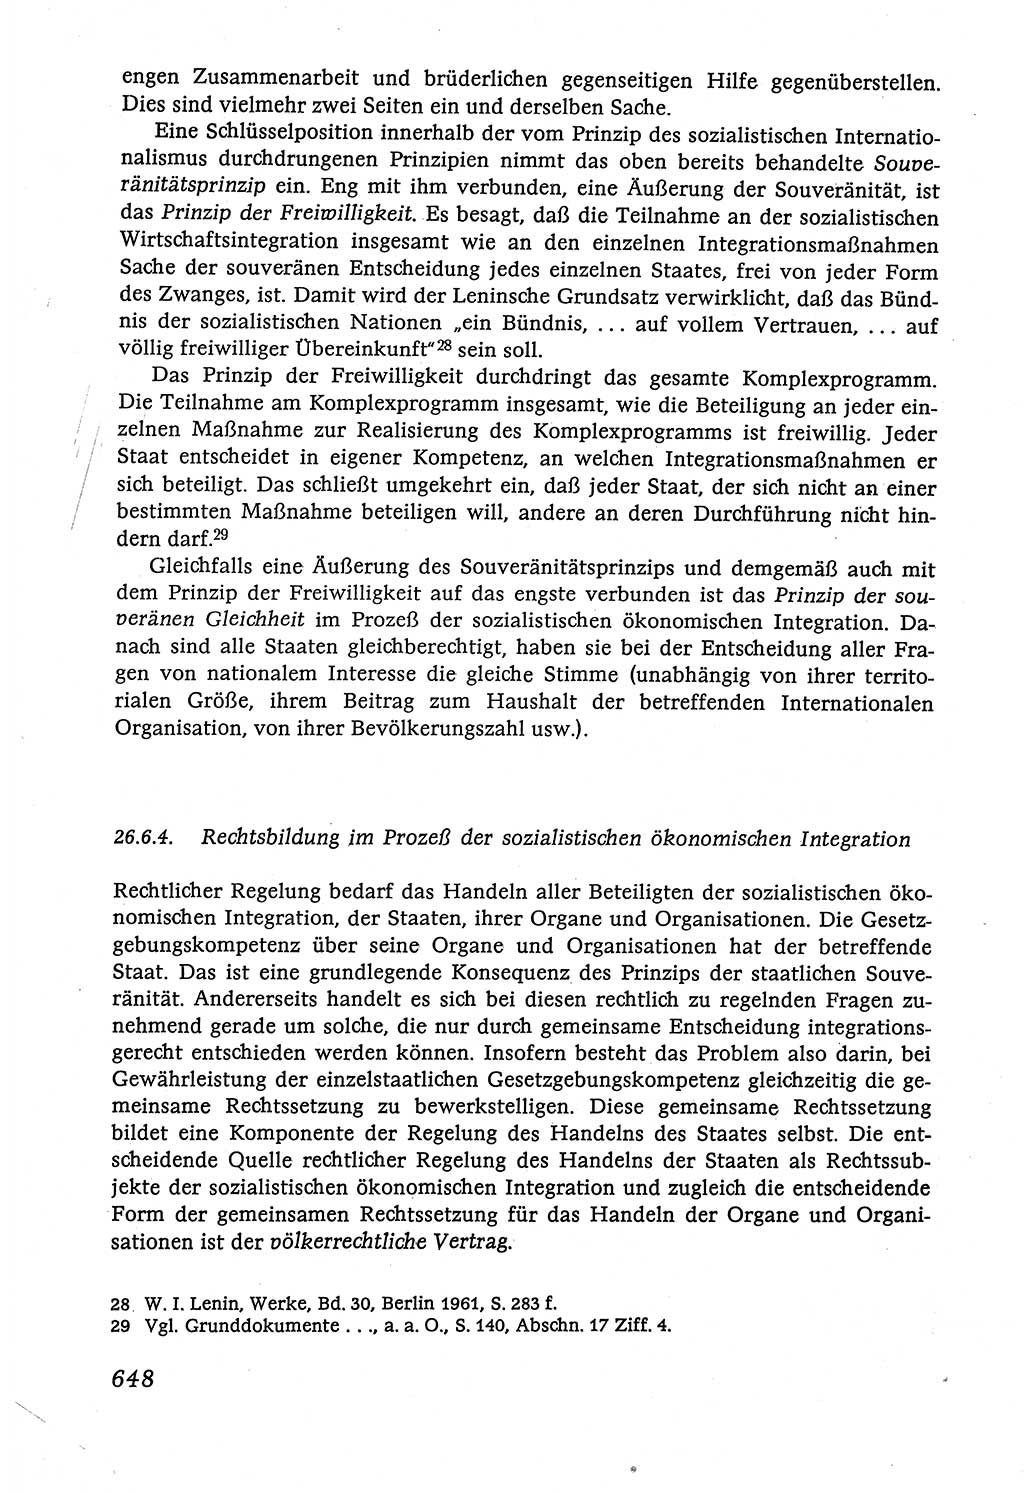 Marxistisch-leninistische (ML) Staats- und Rechtstheorie [Deutsche Demokratische Republik (DDR)], Lehrbuch 1980, Seite 648 (ML St.-R.-Th. DDR Lb. 1980, S. 648)